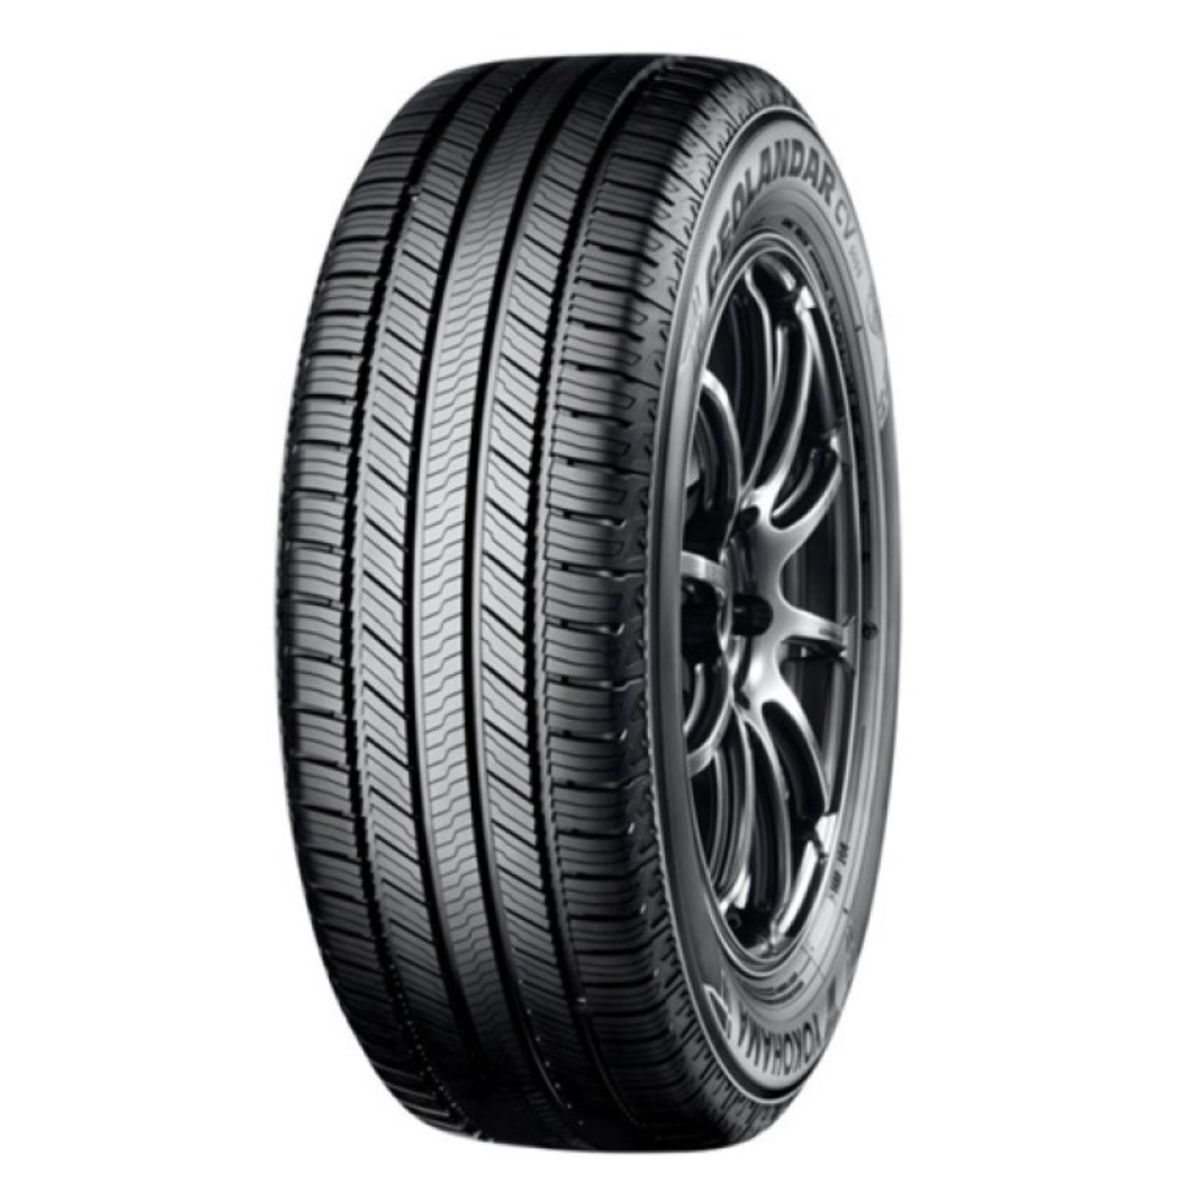 Neumáticos de verano YOKOHAMA Geolandar CV G058 215/65R17 99H